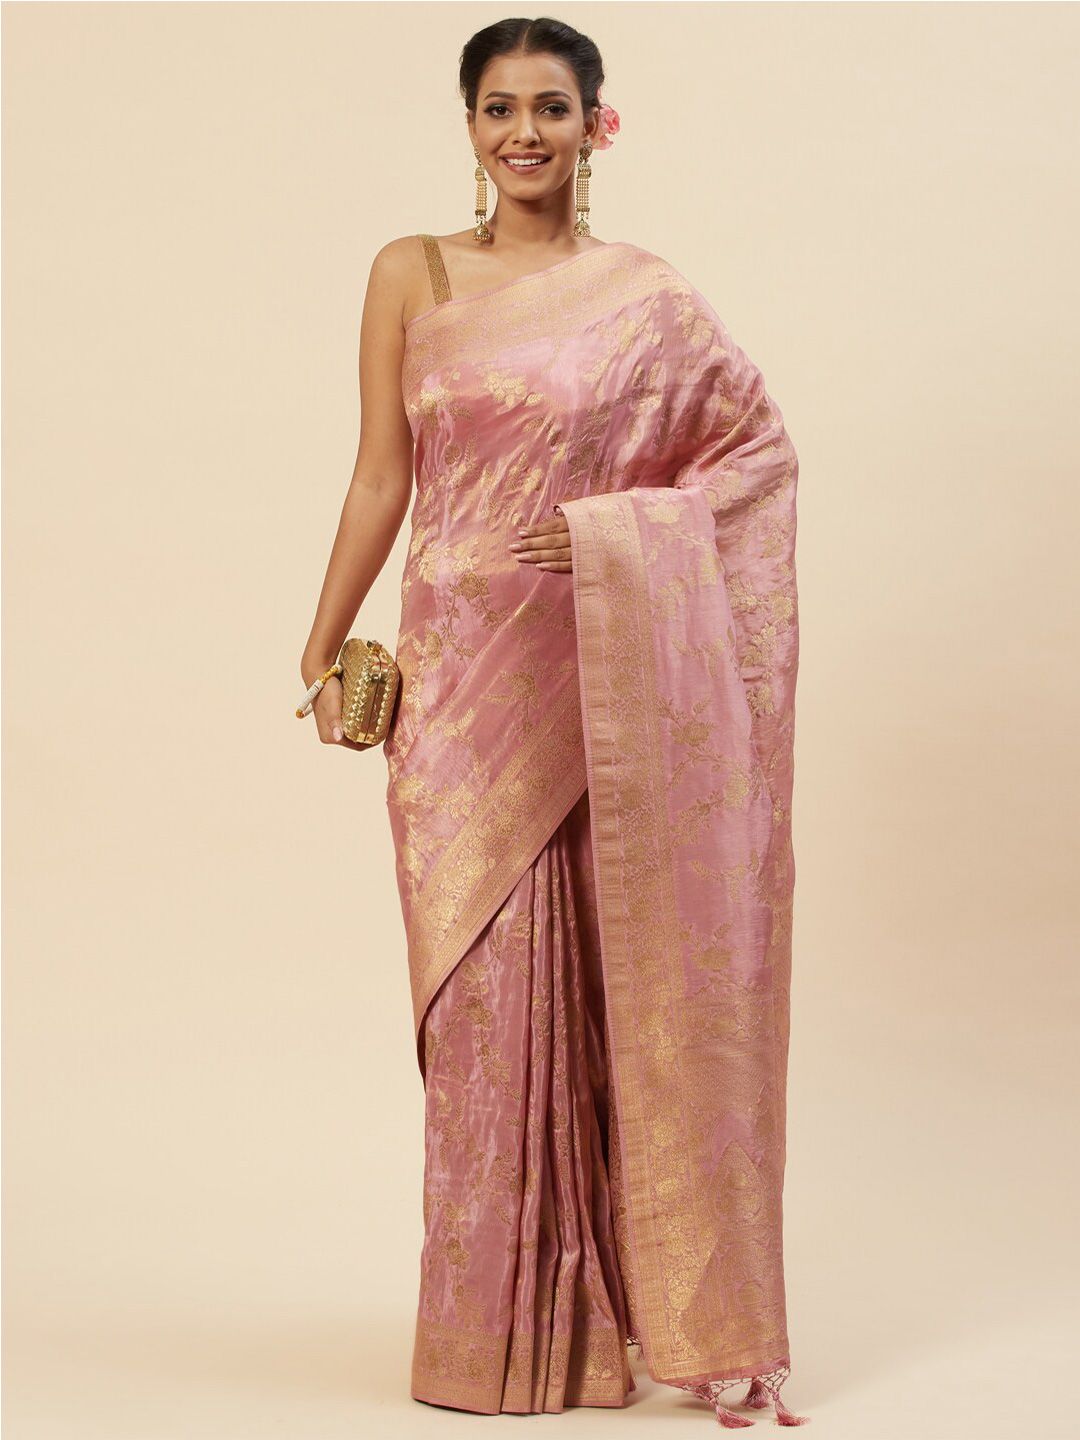 Meena Bazaar Woven Design Zari Art Silk Banarasi Saree Price in India